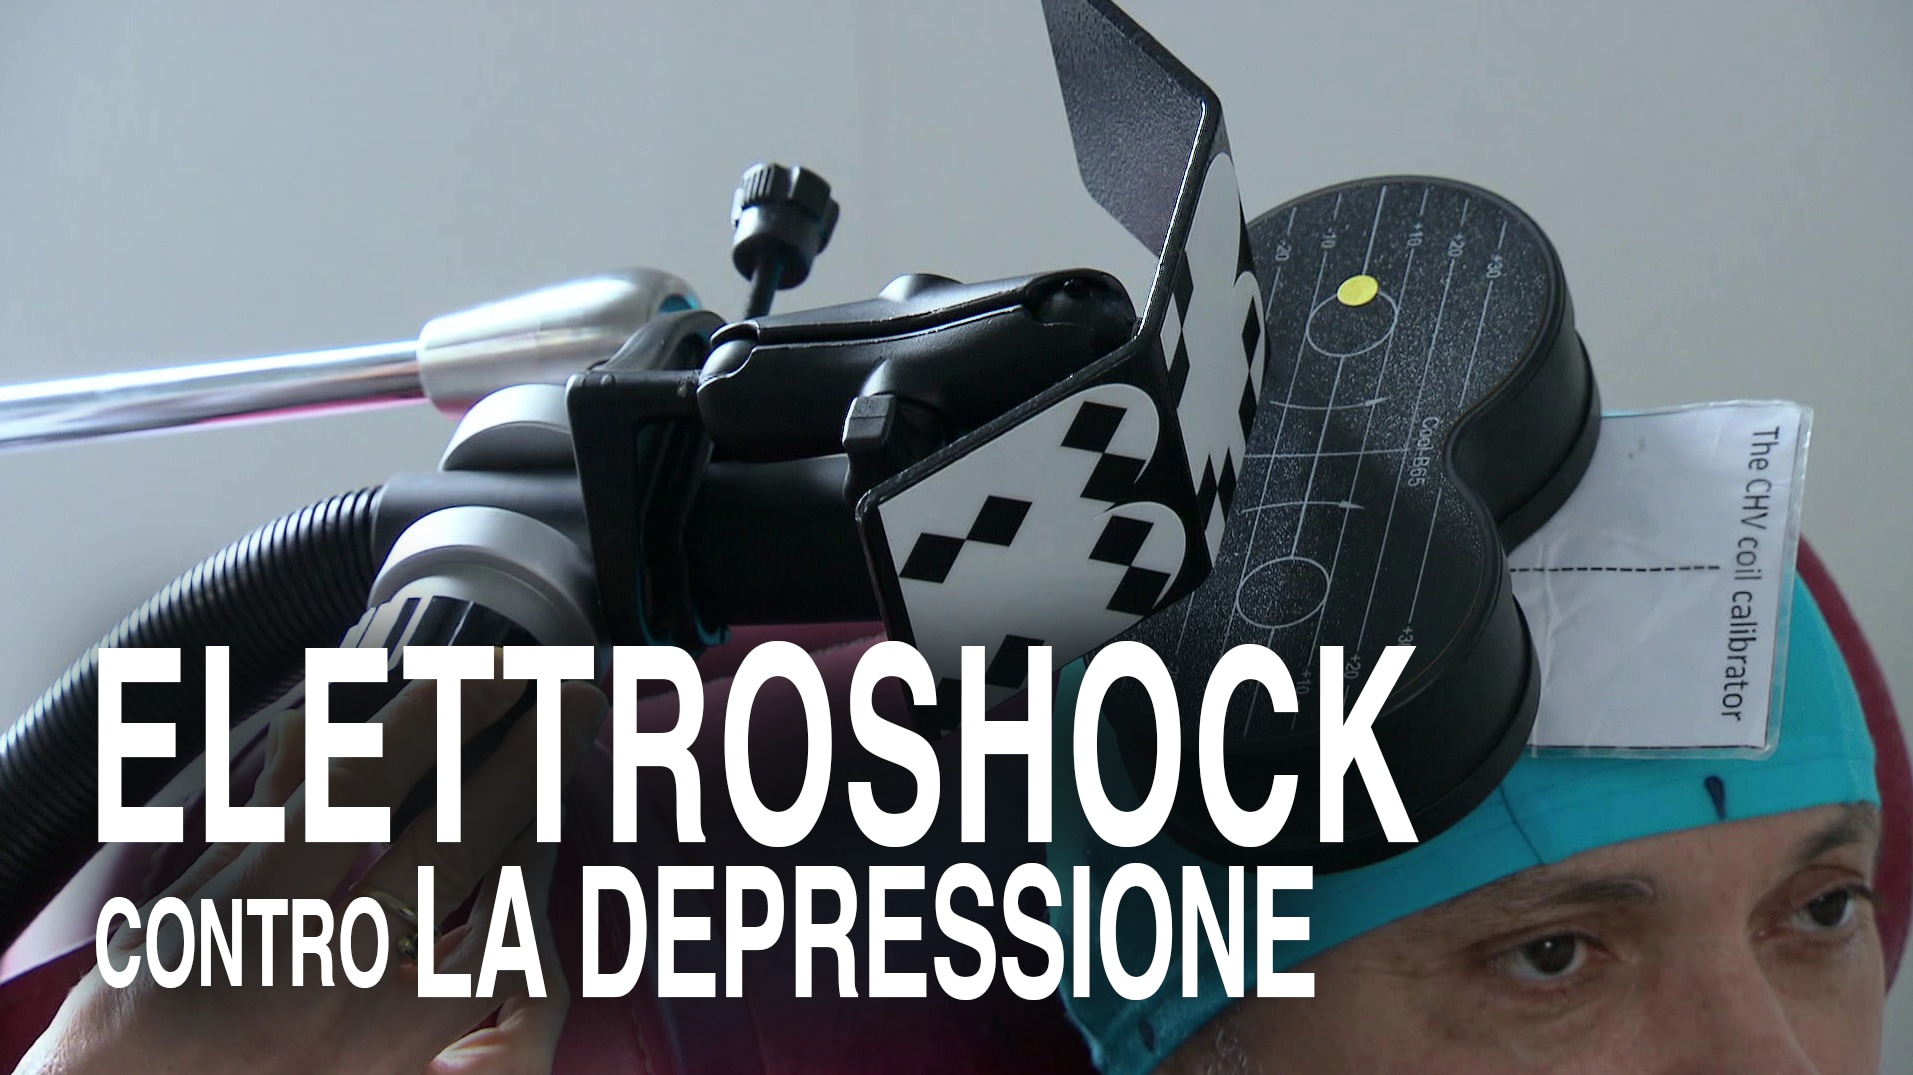 Elettroshock contro la depressione